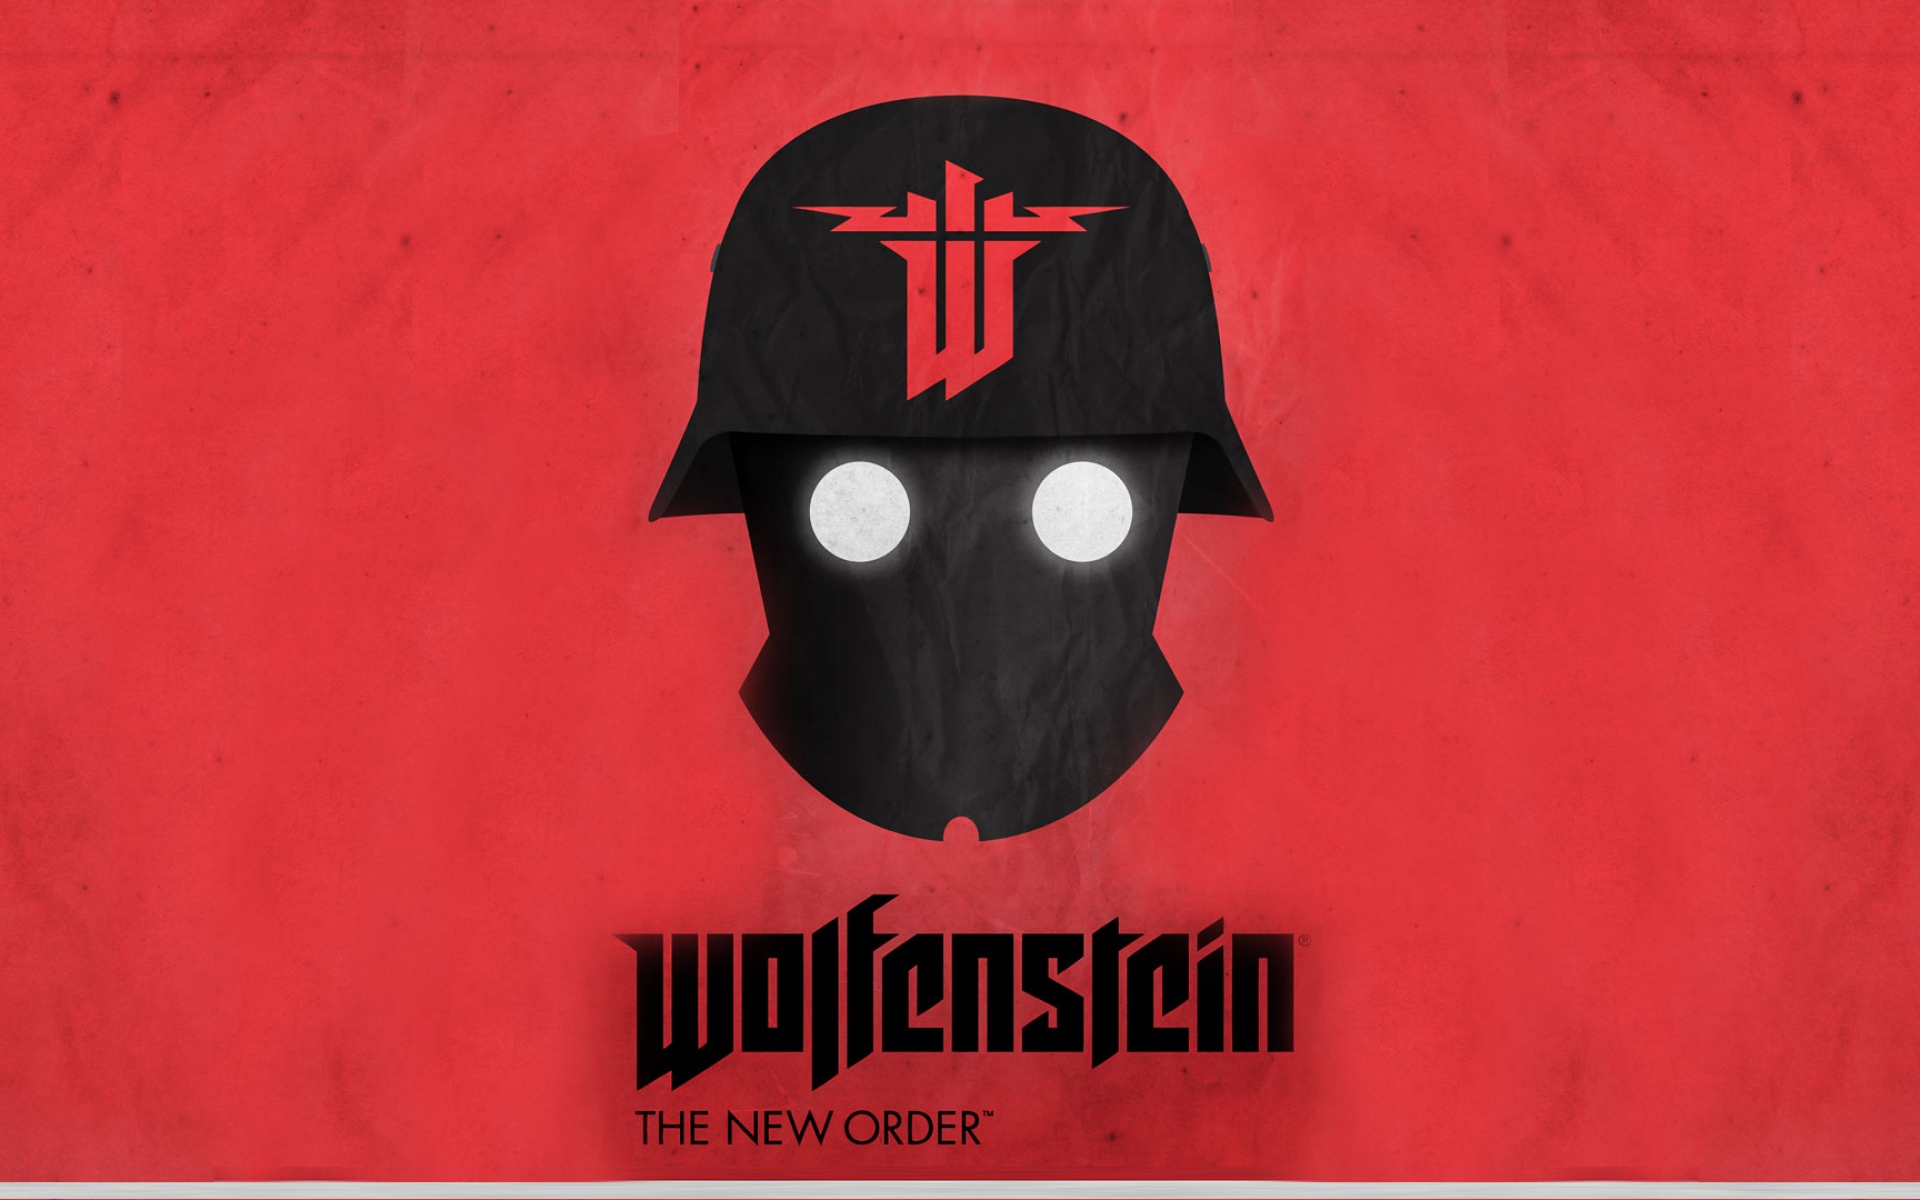 Картинки Wolfenstein новый порядок, продолжение серии Wolfenstein, PC, PlayStation 3, PlayStation 4, Xbox 360, Xbox один фото и обои на рабочий стол